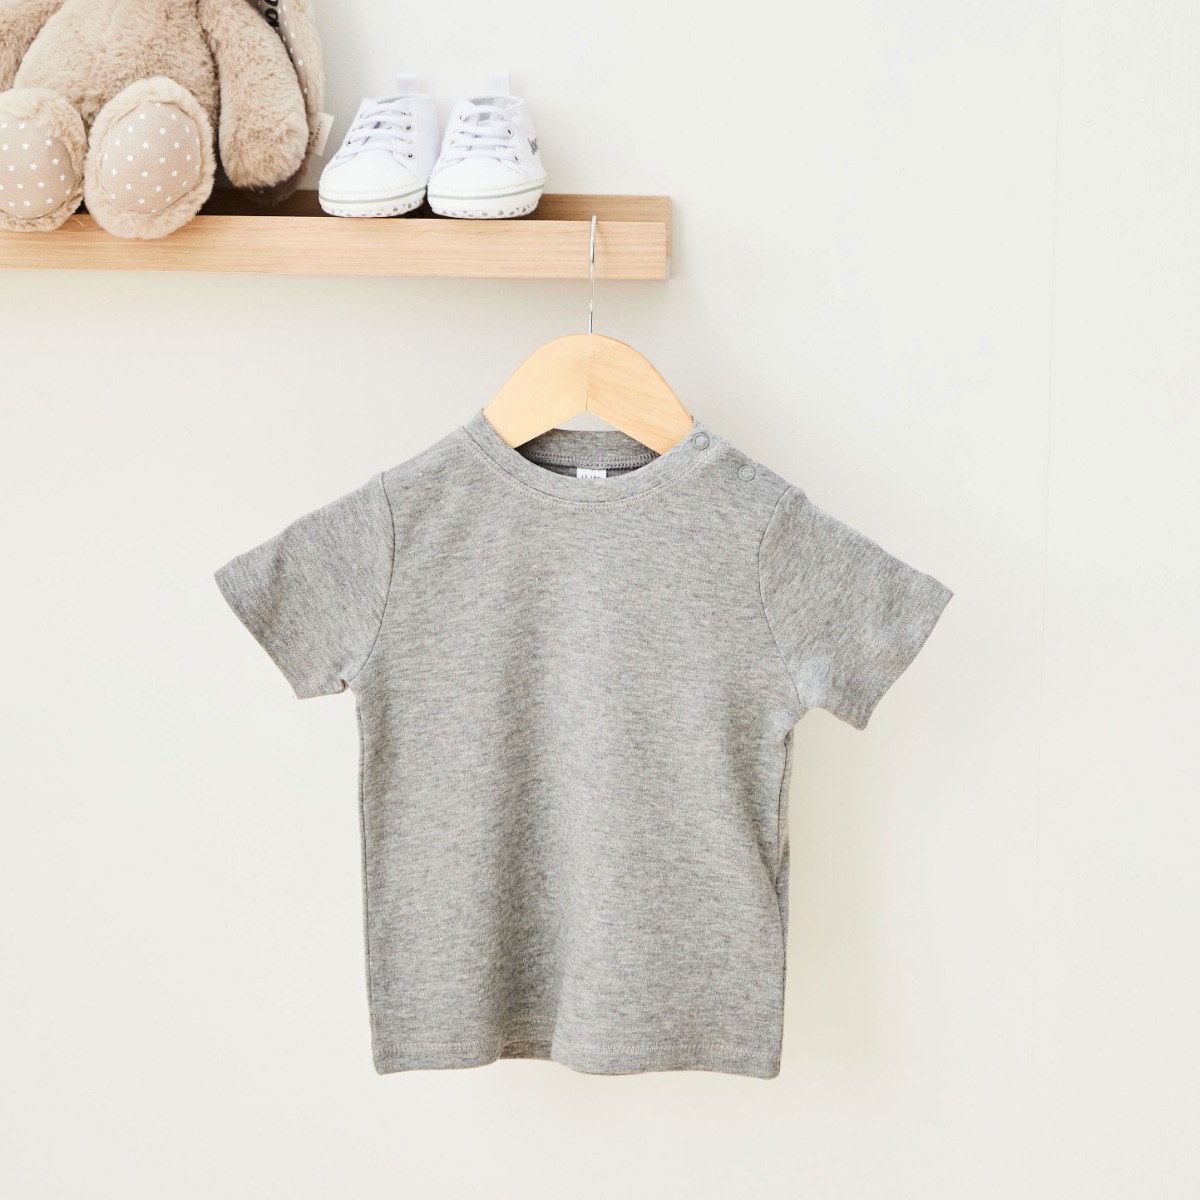 Grey Children's T-Shirt